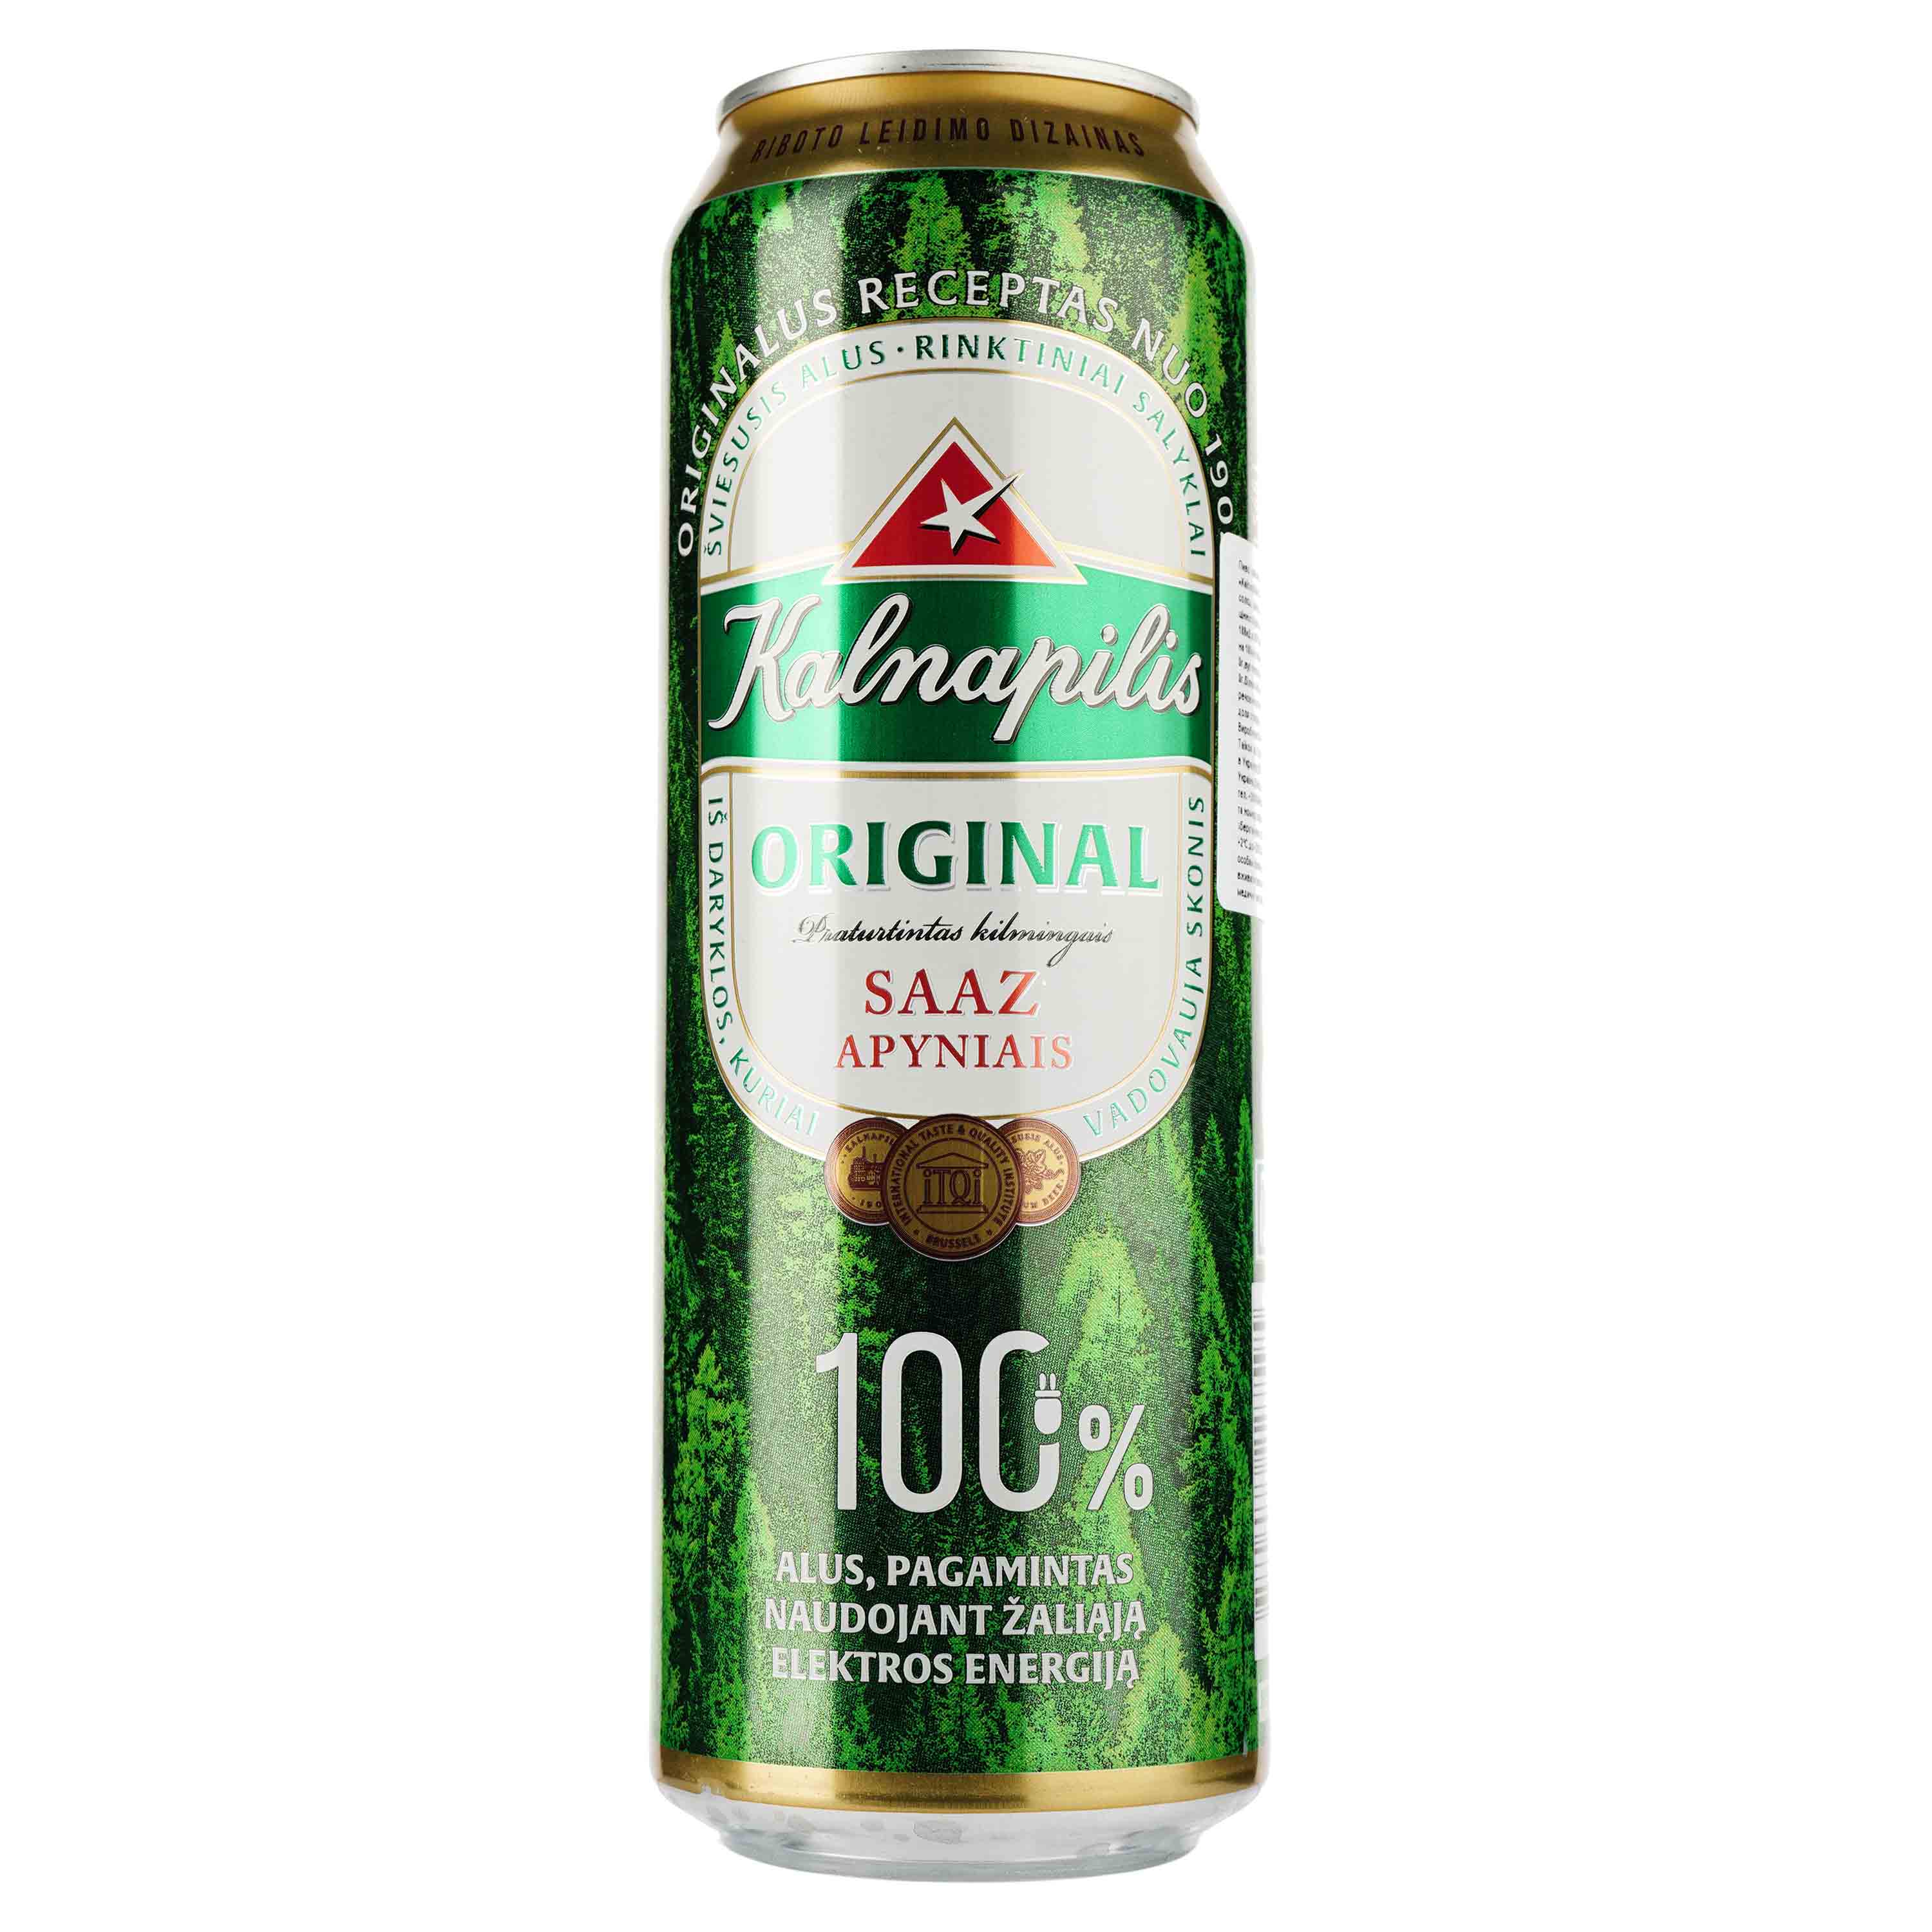 Пиво Kalnapilis Original, світле, фільтроване, 5%, з/б, 0,568 л - фото 1